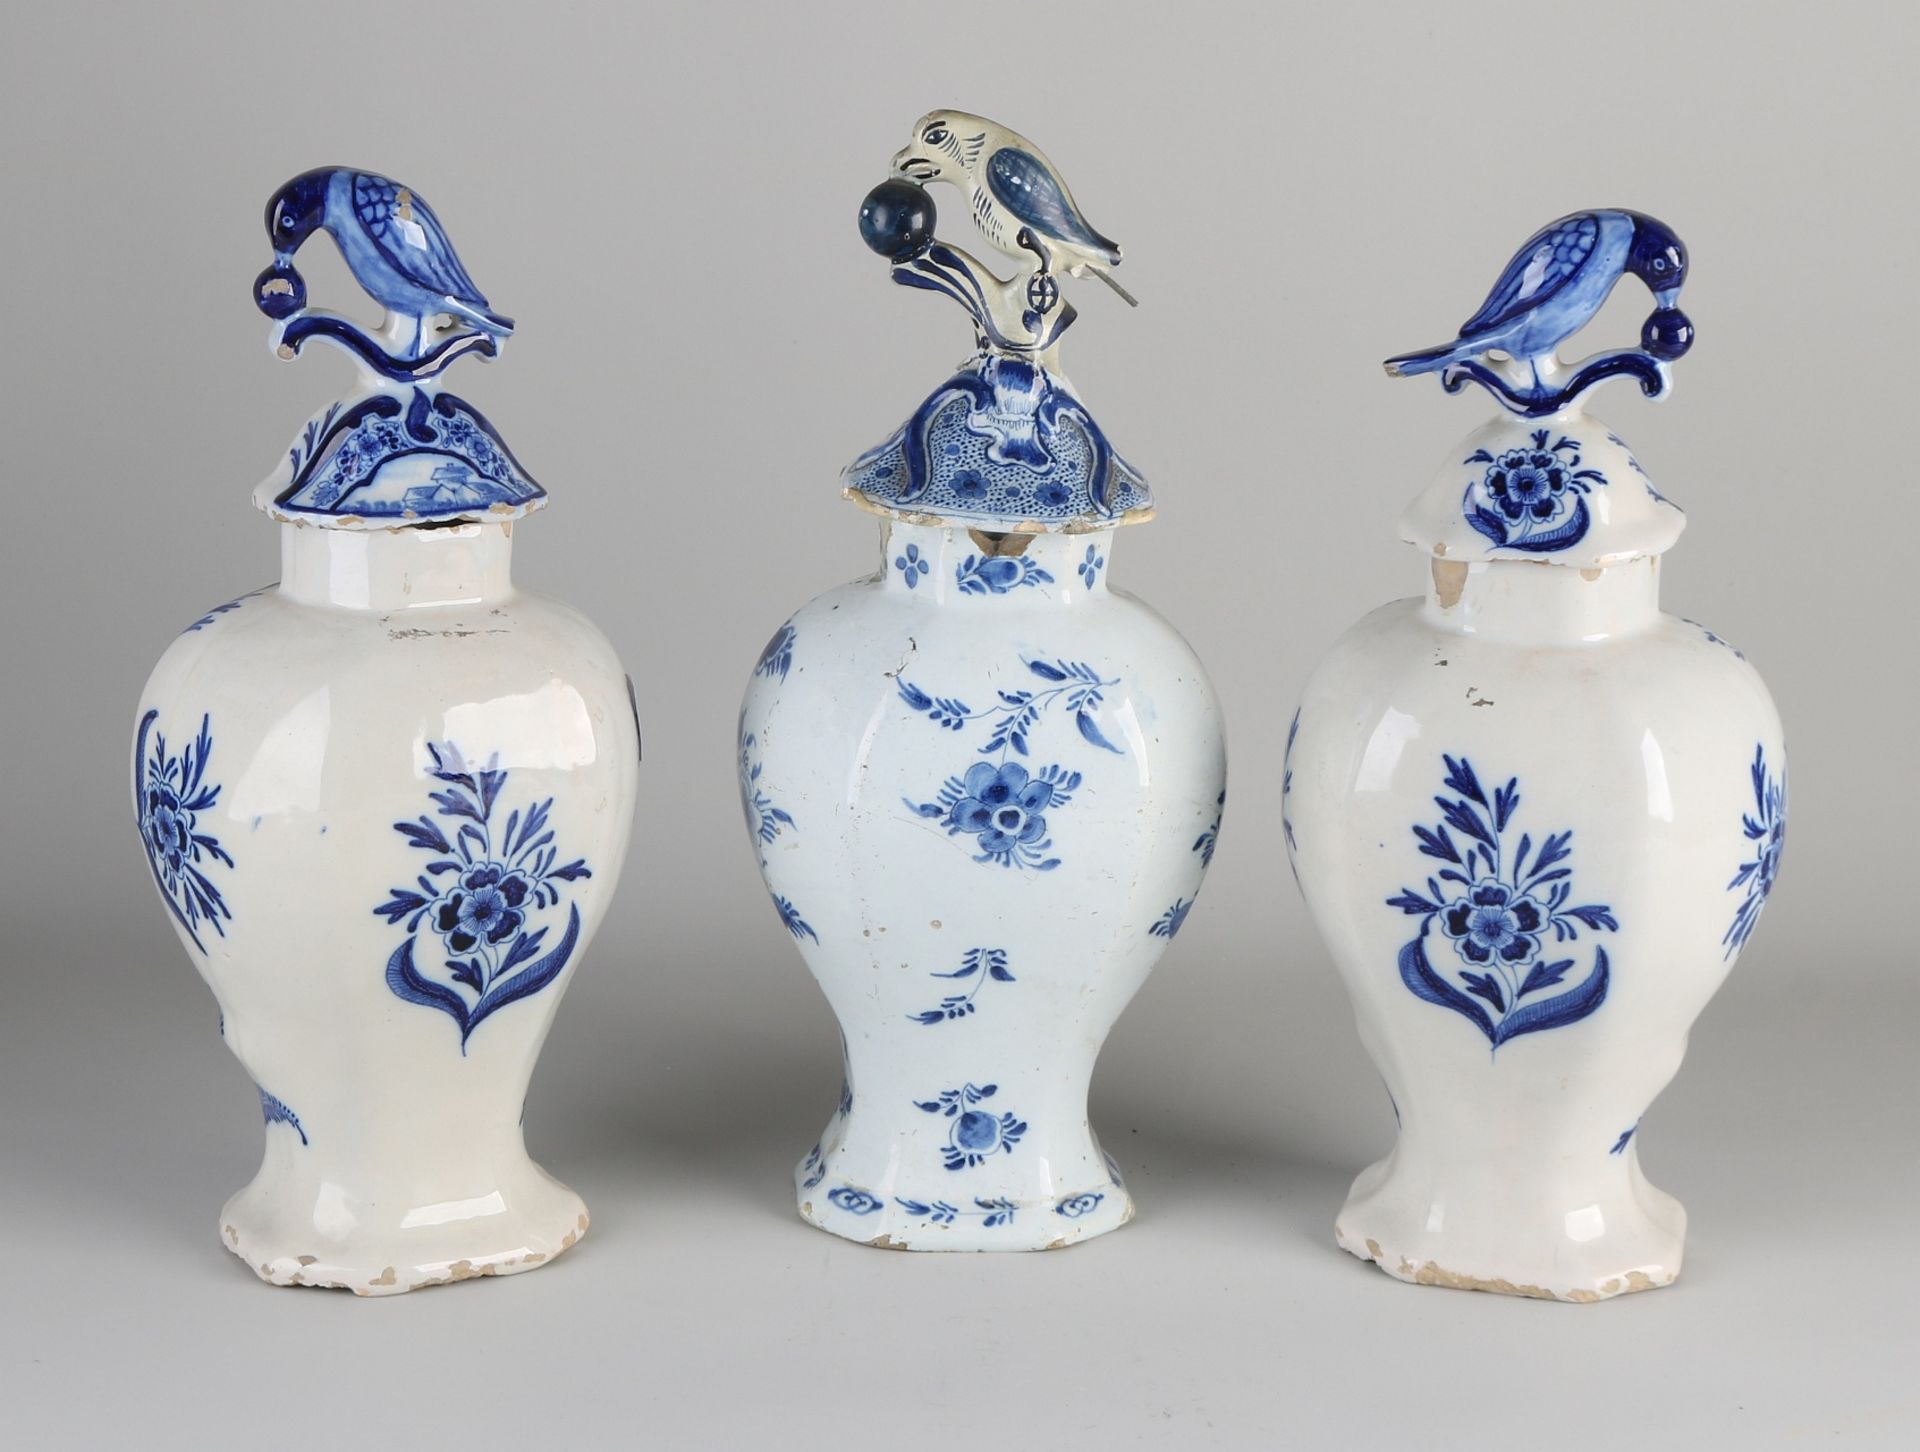 Drei Delfter Fayence-Vasen aus dem 18. Jahrhundert. Unter anderem: van Duyn und CK. Restauratione - Image 2 of 3